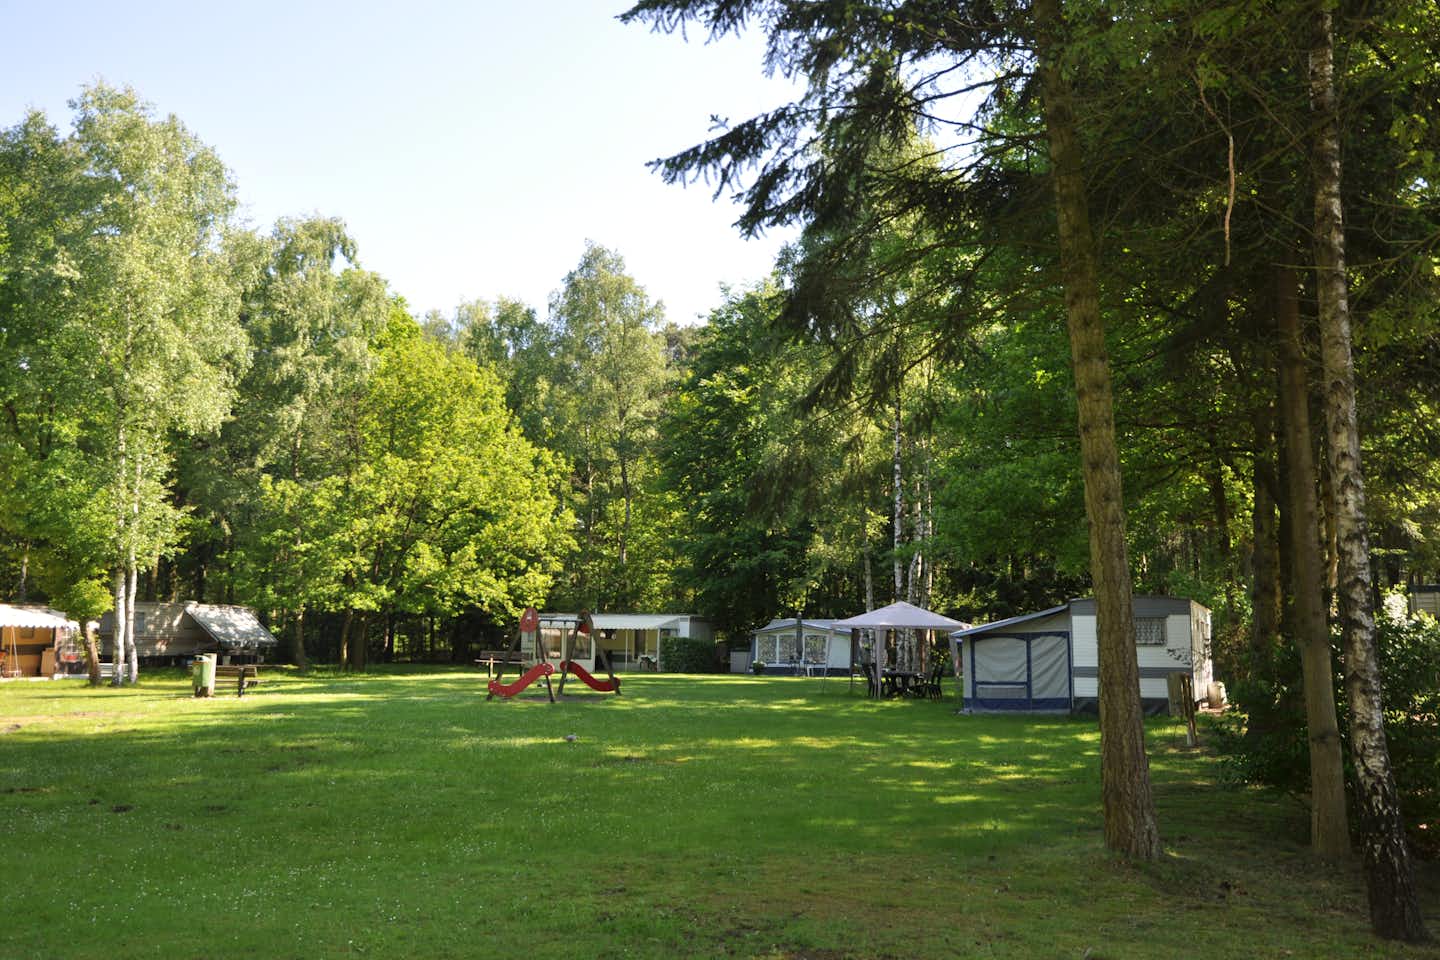 Vodatent @ Camping het Veen - Blick auf die Standplätze auf der Wiese mit kleinem Kinderspielplatz